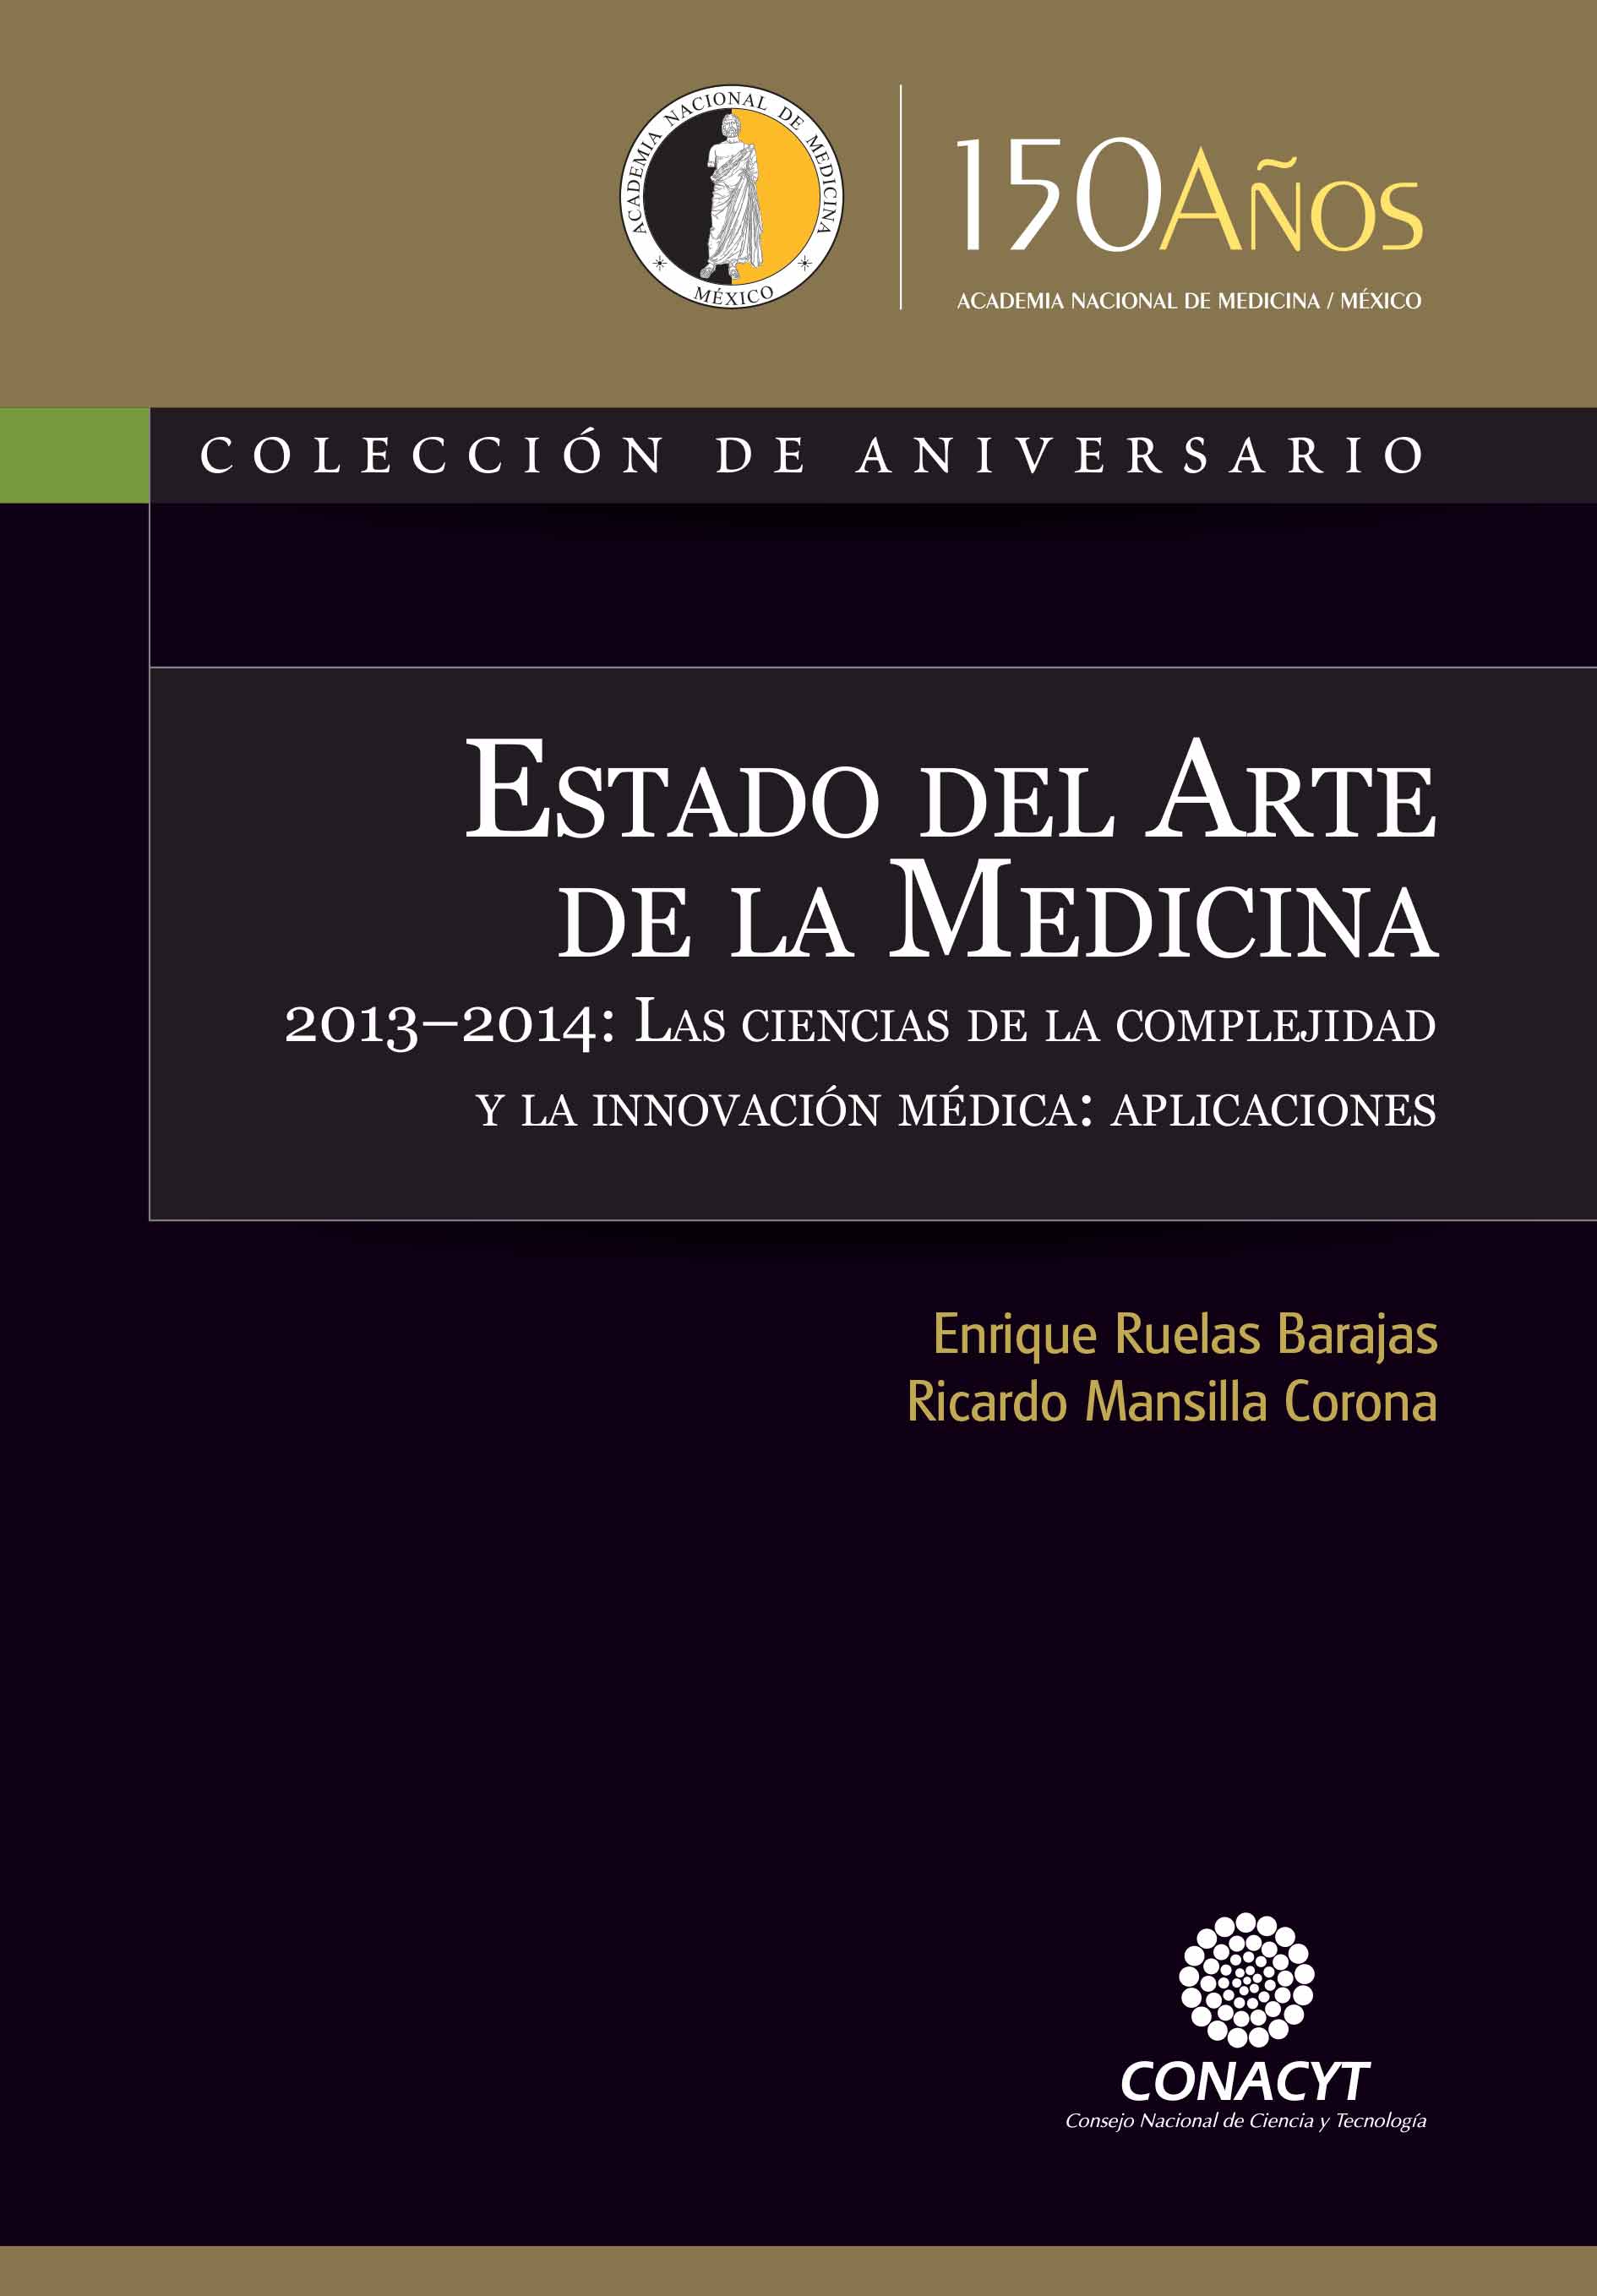 Estado del Arte de la Medicina 2013-2014: Las ciencias de la complejidad y la innovacion médica: aplicaciones